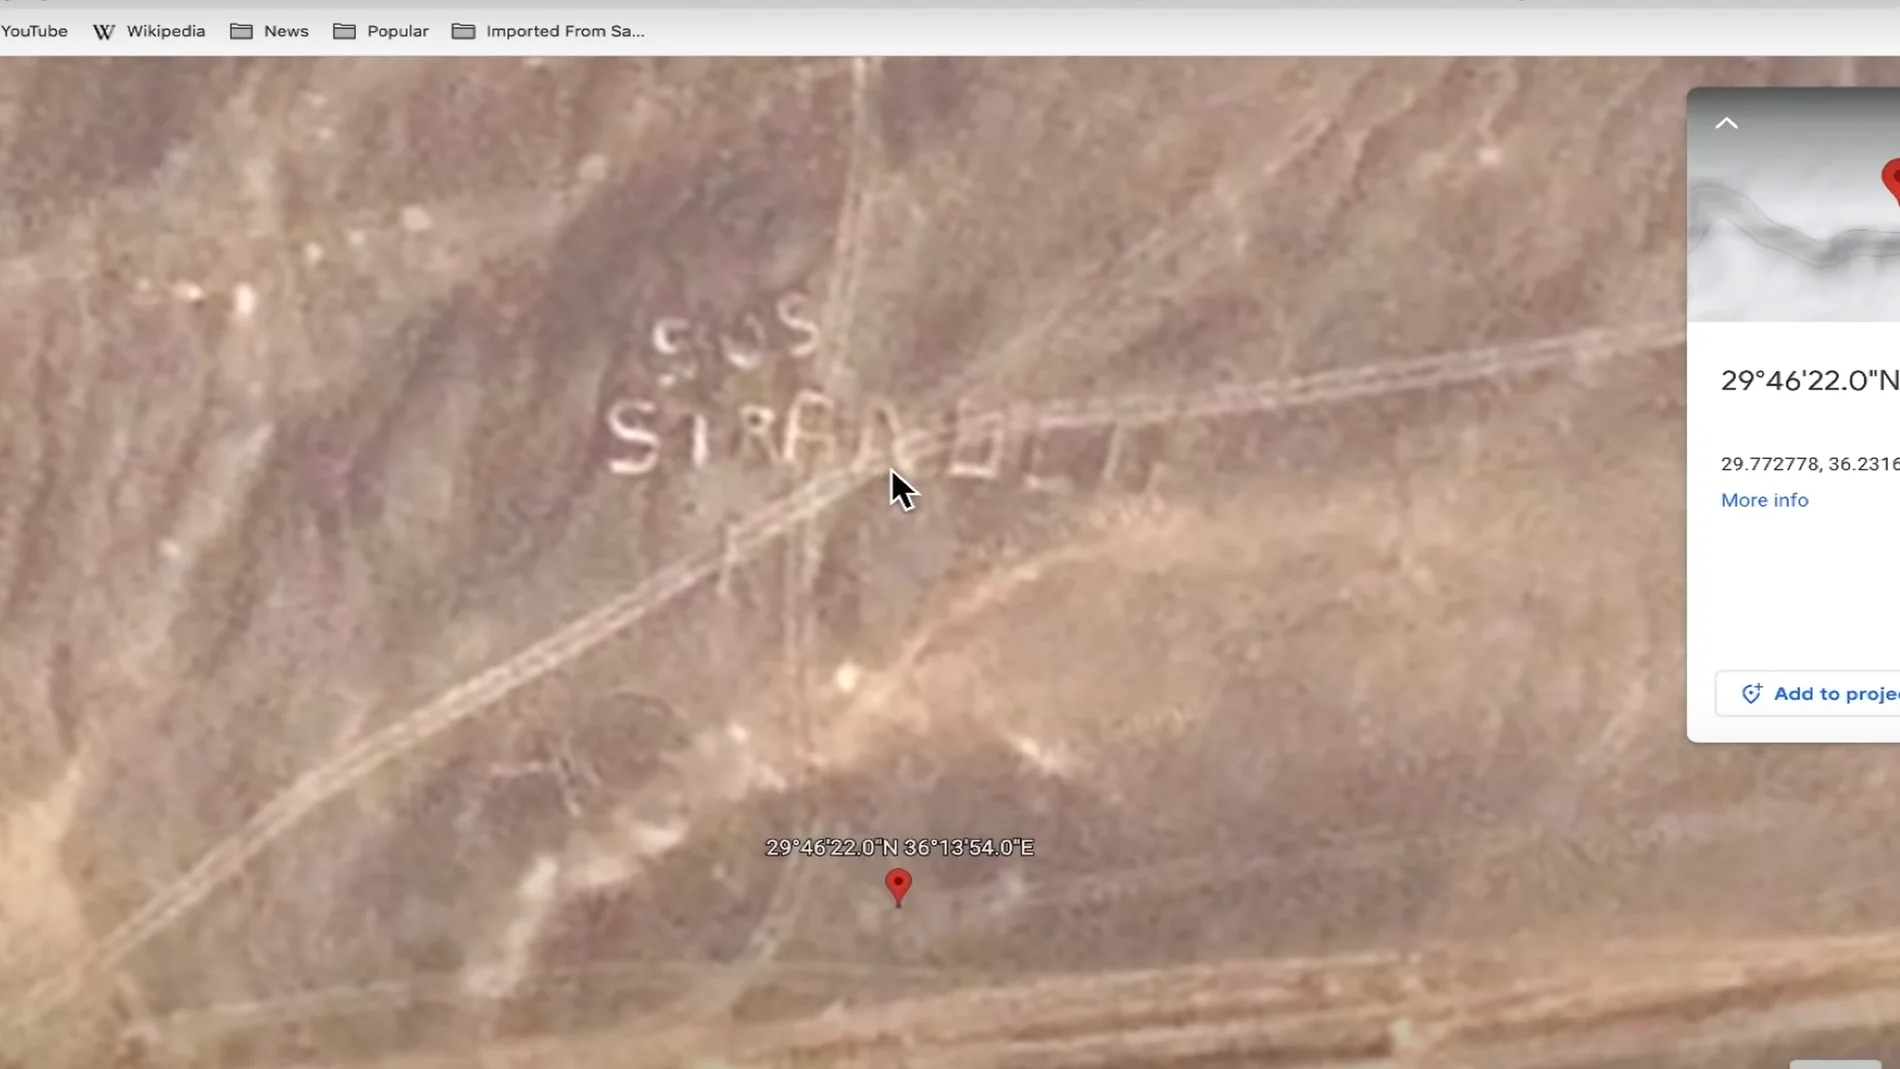 El misterioso &#39;SOS&#39; en el desierto de Jordania que se puede ver en Google Earth